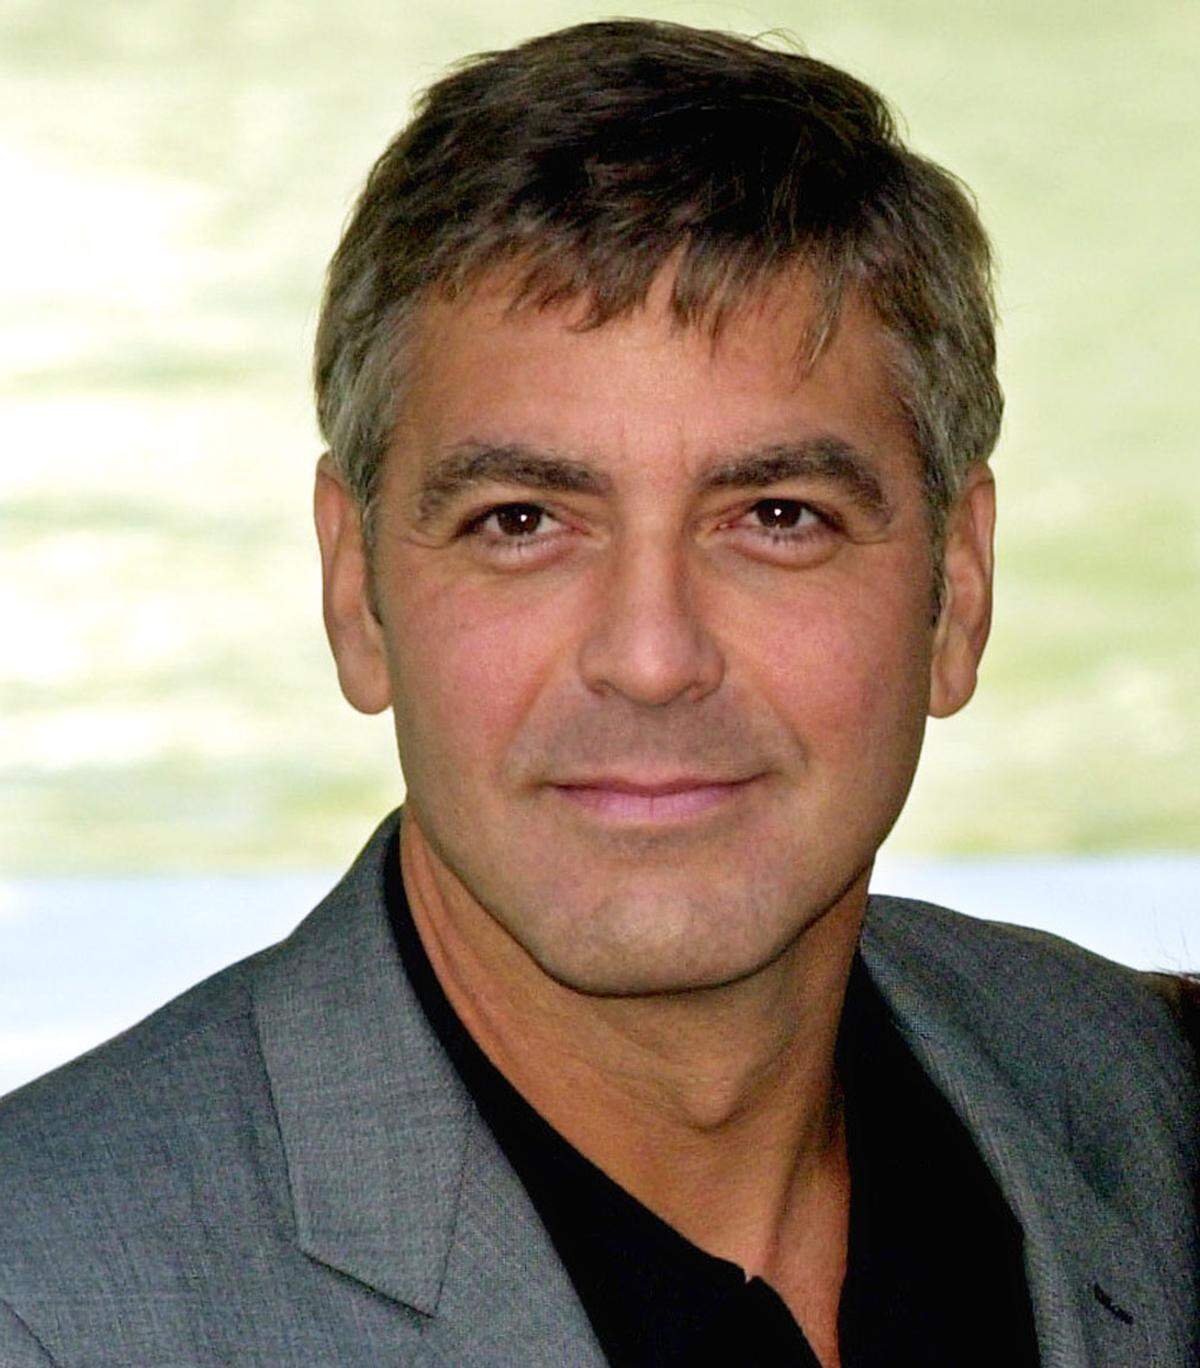 Hier haben wir ihn wieder: George Clooney debütierte 1998 als Single an der Spitze der Galerie der ''Sexy Männer". In diesem Jahr war er in "Batman &amp; Robin" sowie "Projekt: Peacemaker" zu sehen.